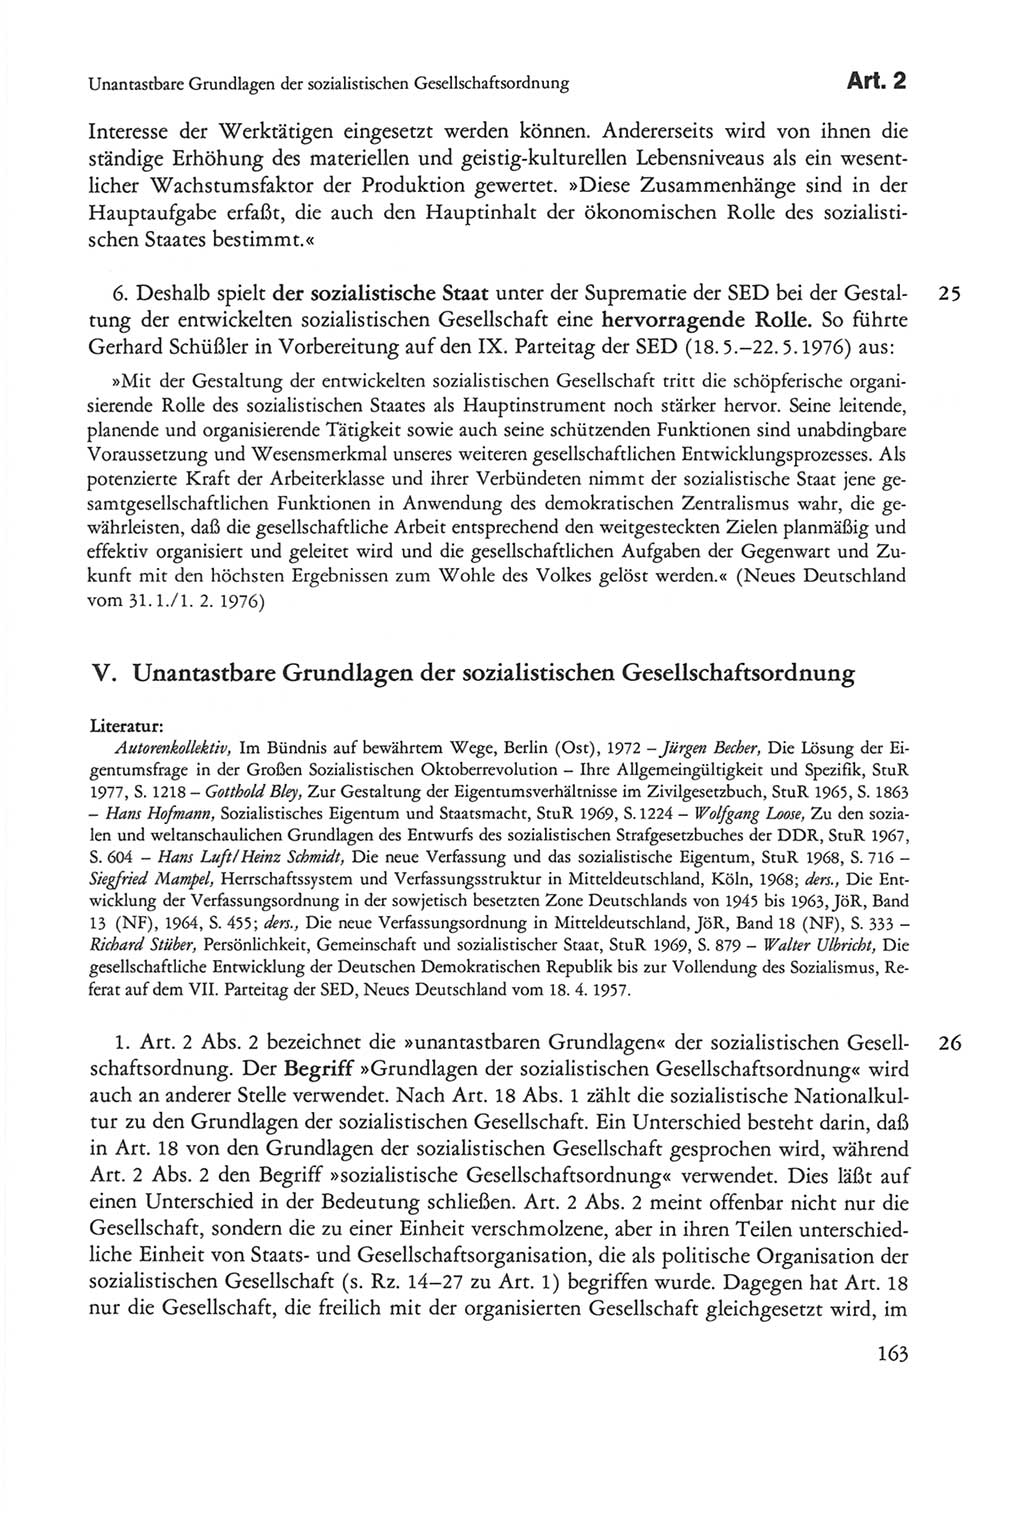 Die sozialistische Verfassung der Deutschen Demokratischen Republik (DDR), Kommentar mit einem Nachtrag 1997, Seite 163 (Soz. Verf. DDR Komm. Nachtr. 1997, S. 163)